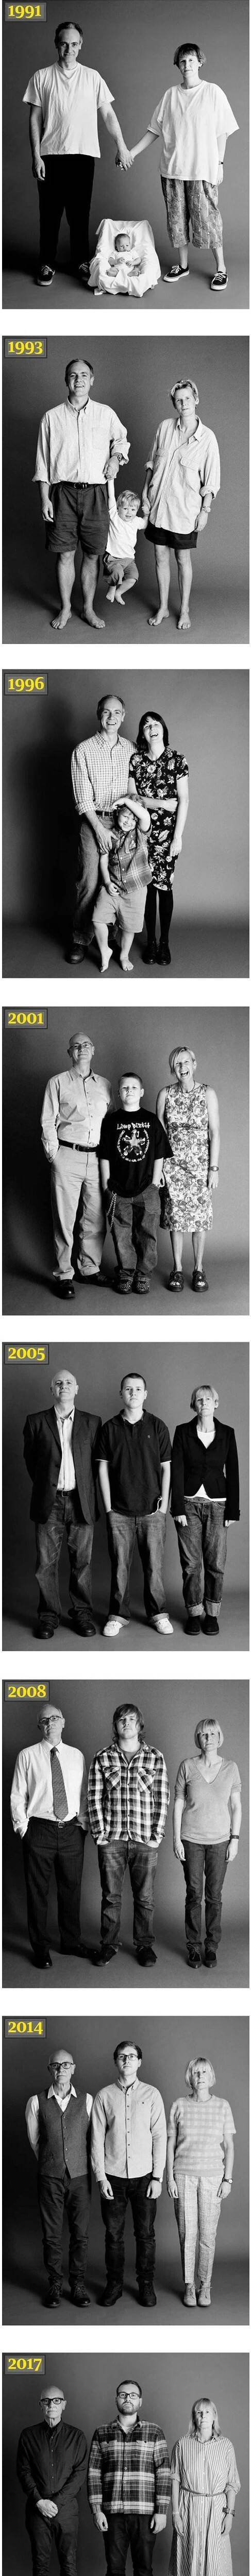 6 30년 동안 찍은 가족사진.jpg